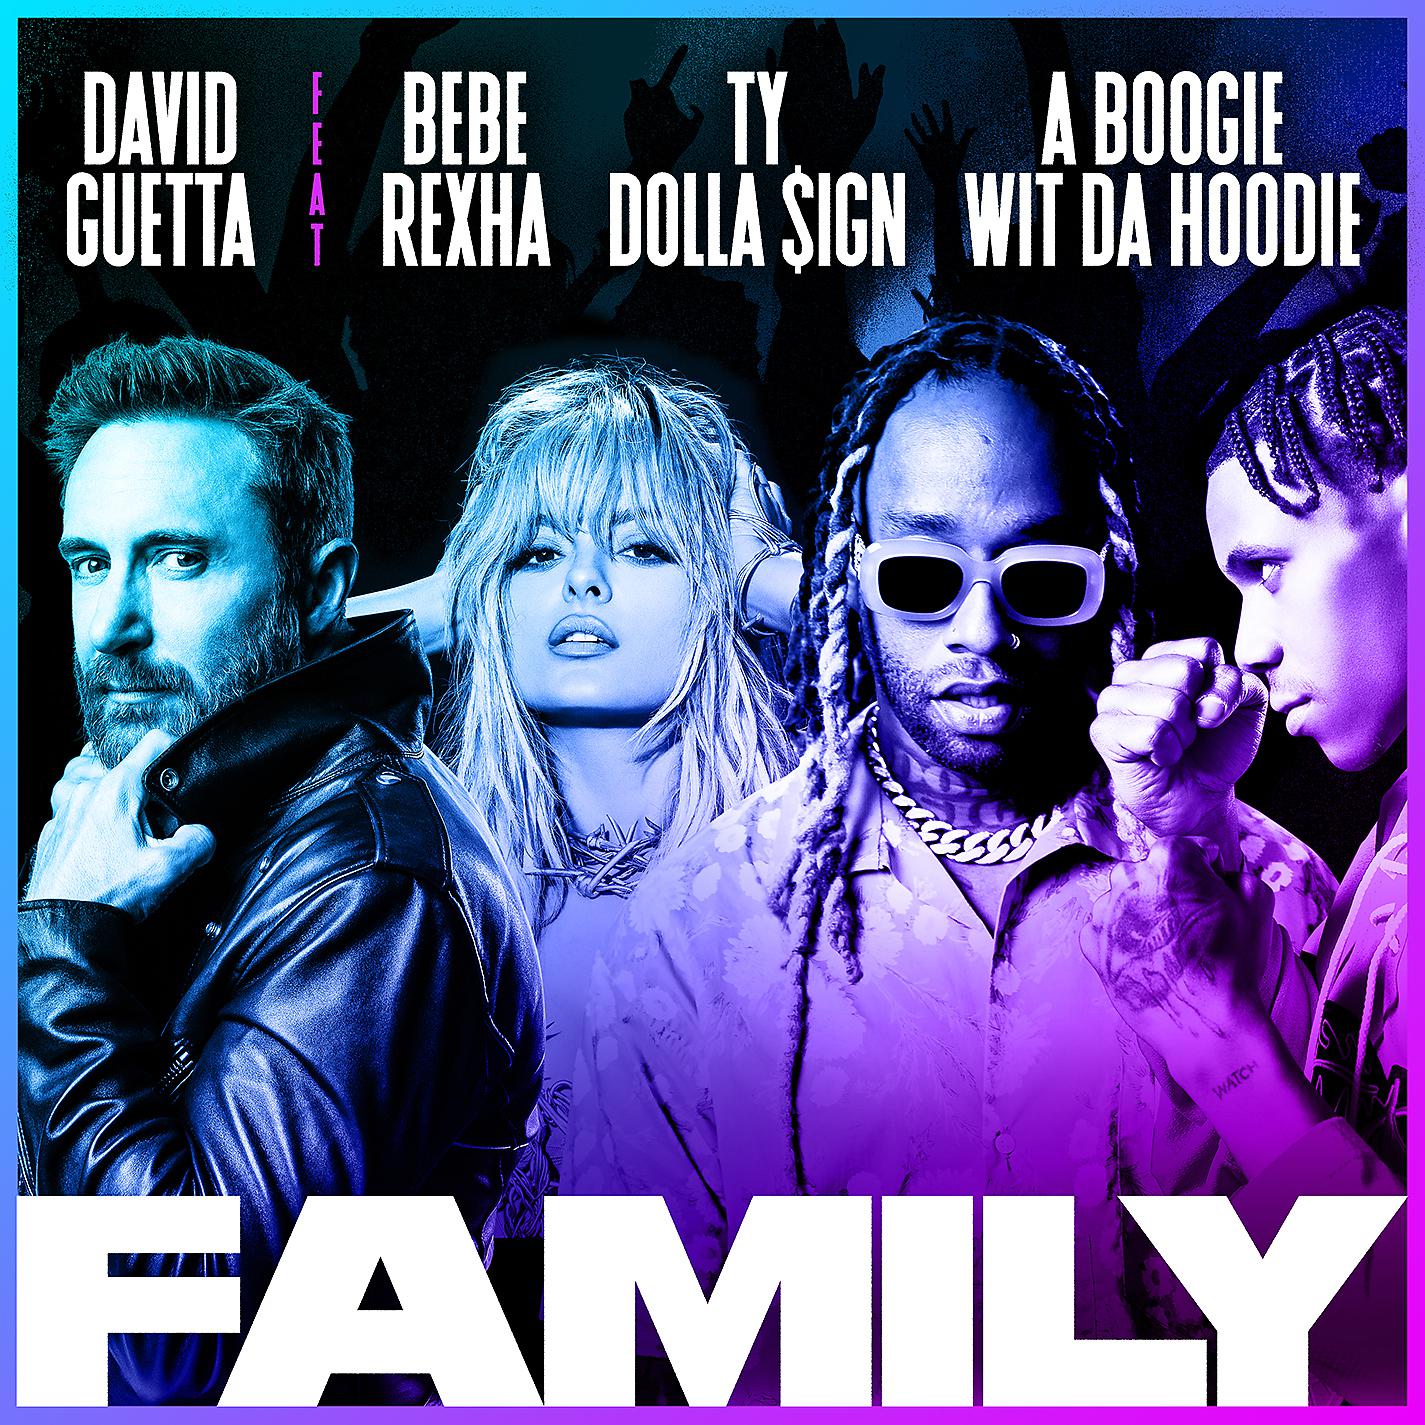 David Guetta, Bebe Rexha, Ty Dolla $ign, A Boogie Wit da Hoodie - Family (feat. Bebe Rexha, Ty Dolla $ign & A Boogie Wit da Hoodie)